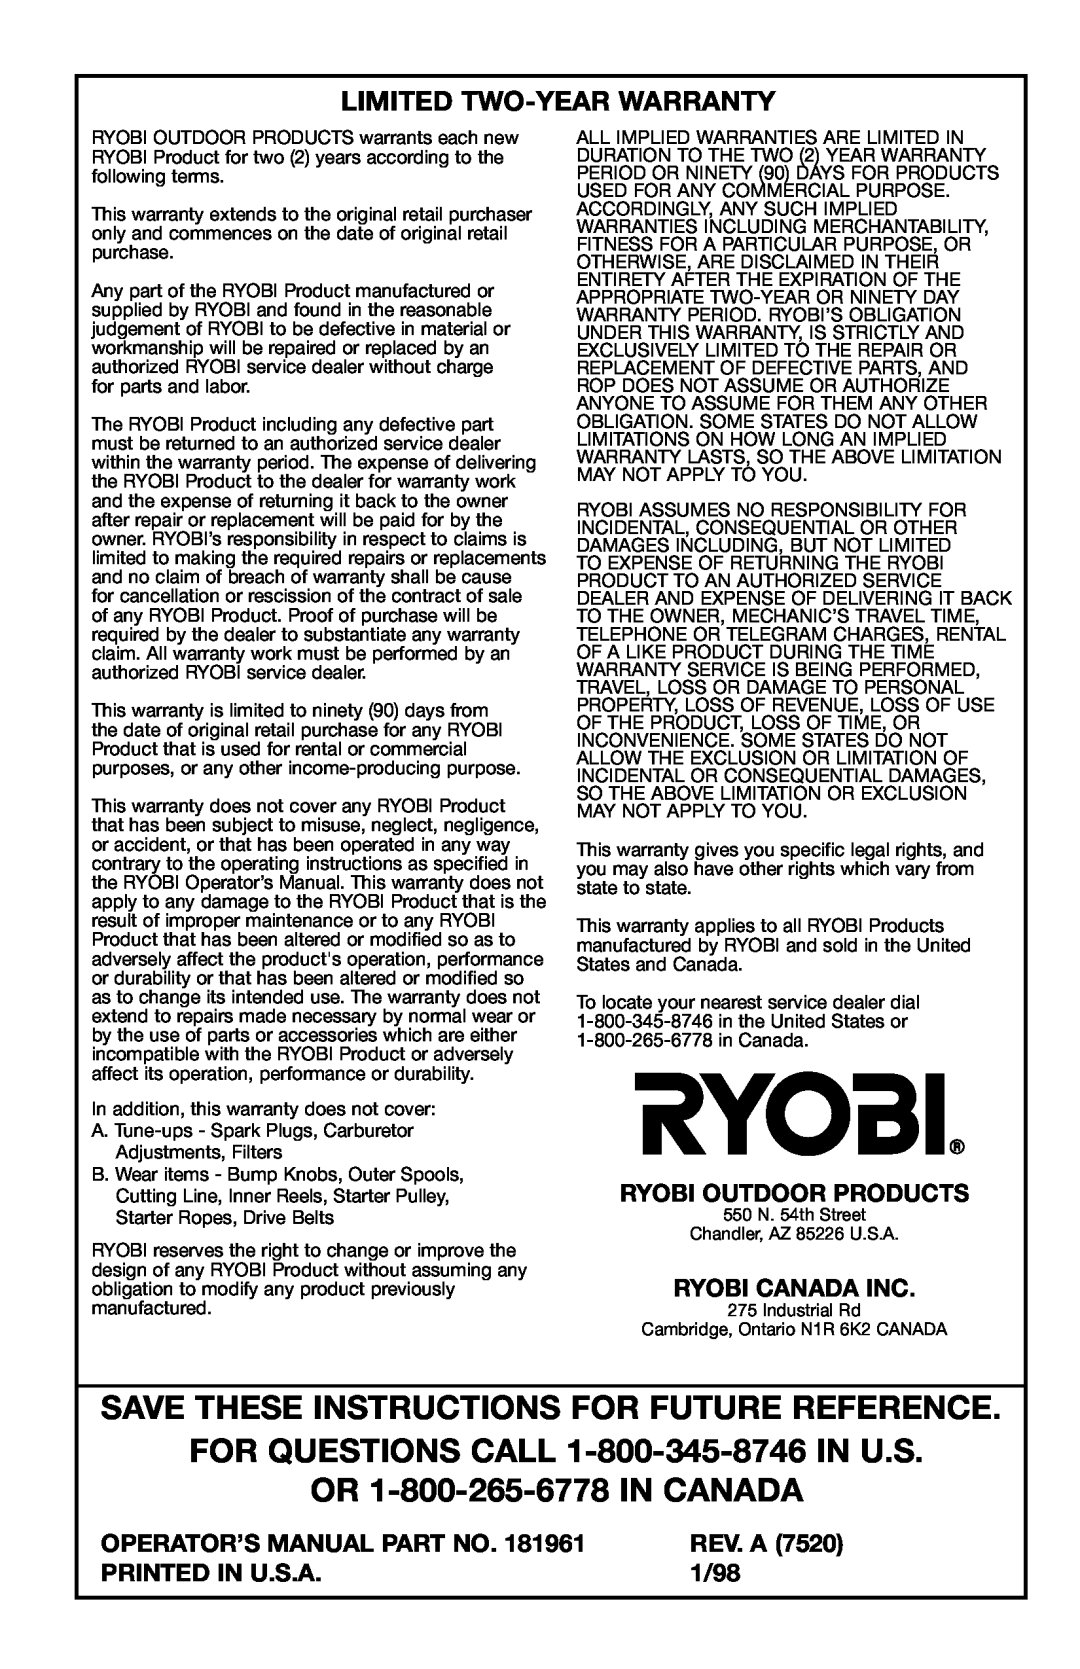 Ryobi 2075r OR 1-800-265-6778 IN CANADA, Limited Two-Year Warranty, Ryobi Outdoor Products, Ryobi Canada Inc, Rev. A, 1/98 